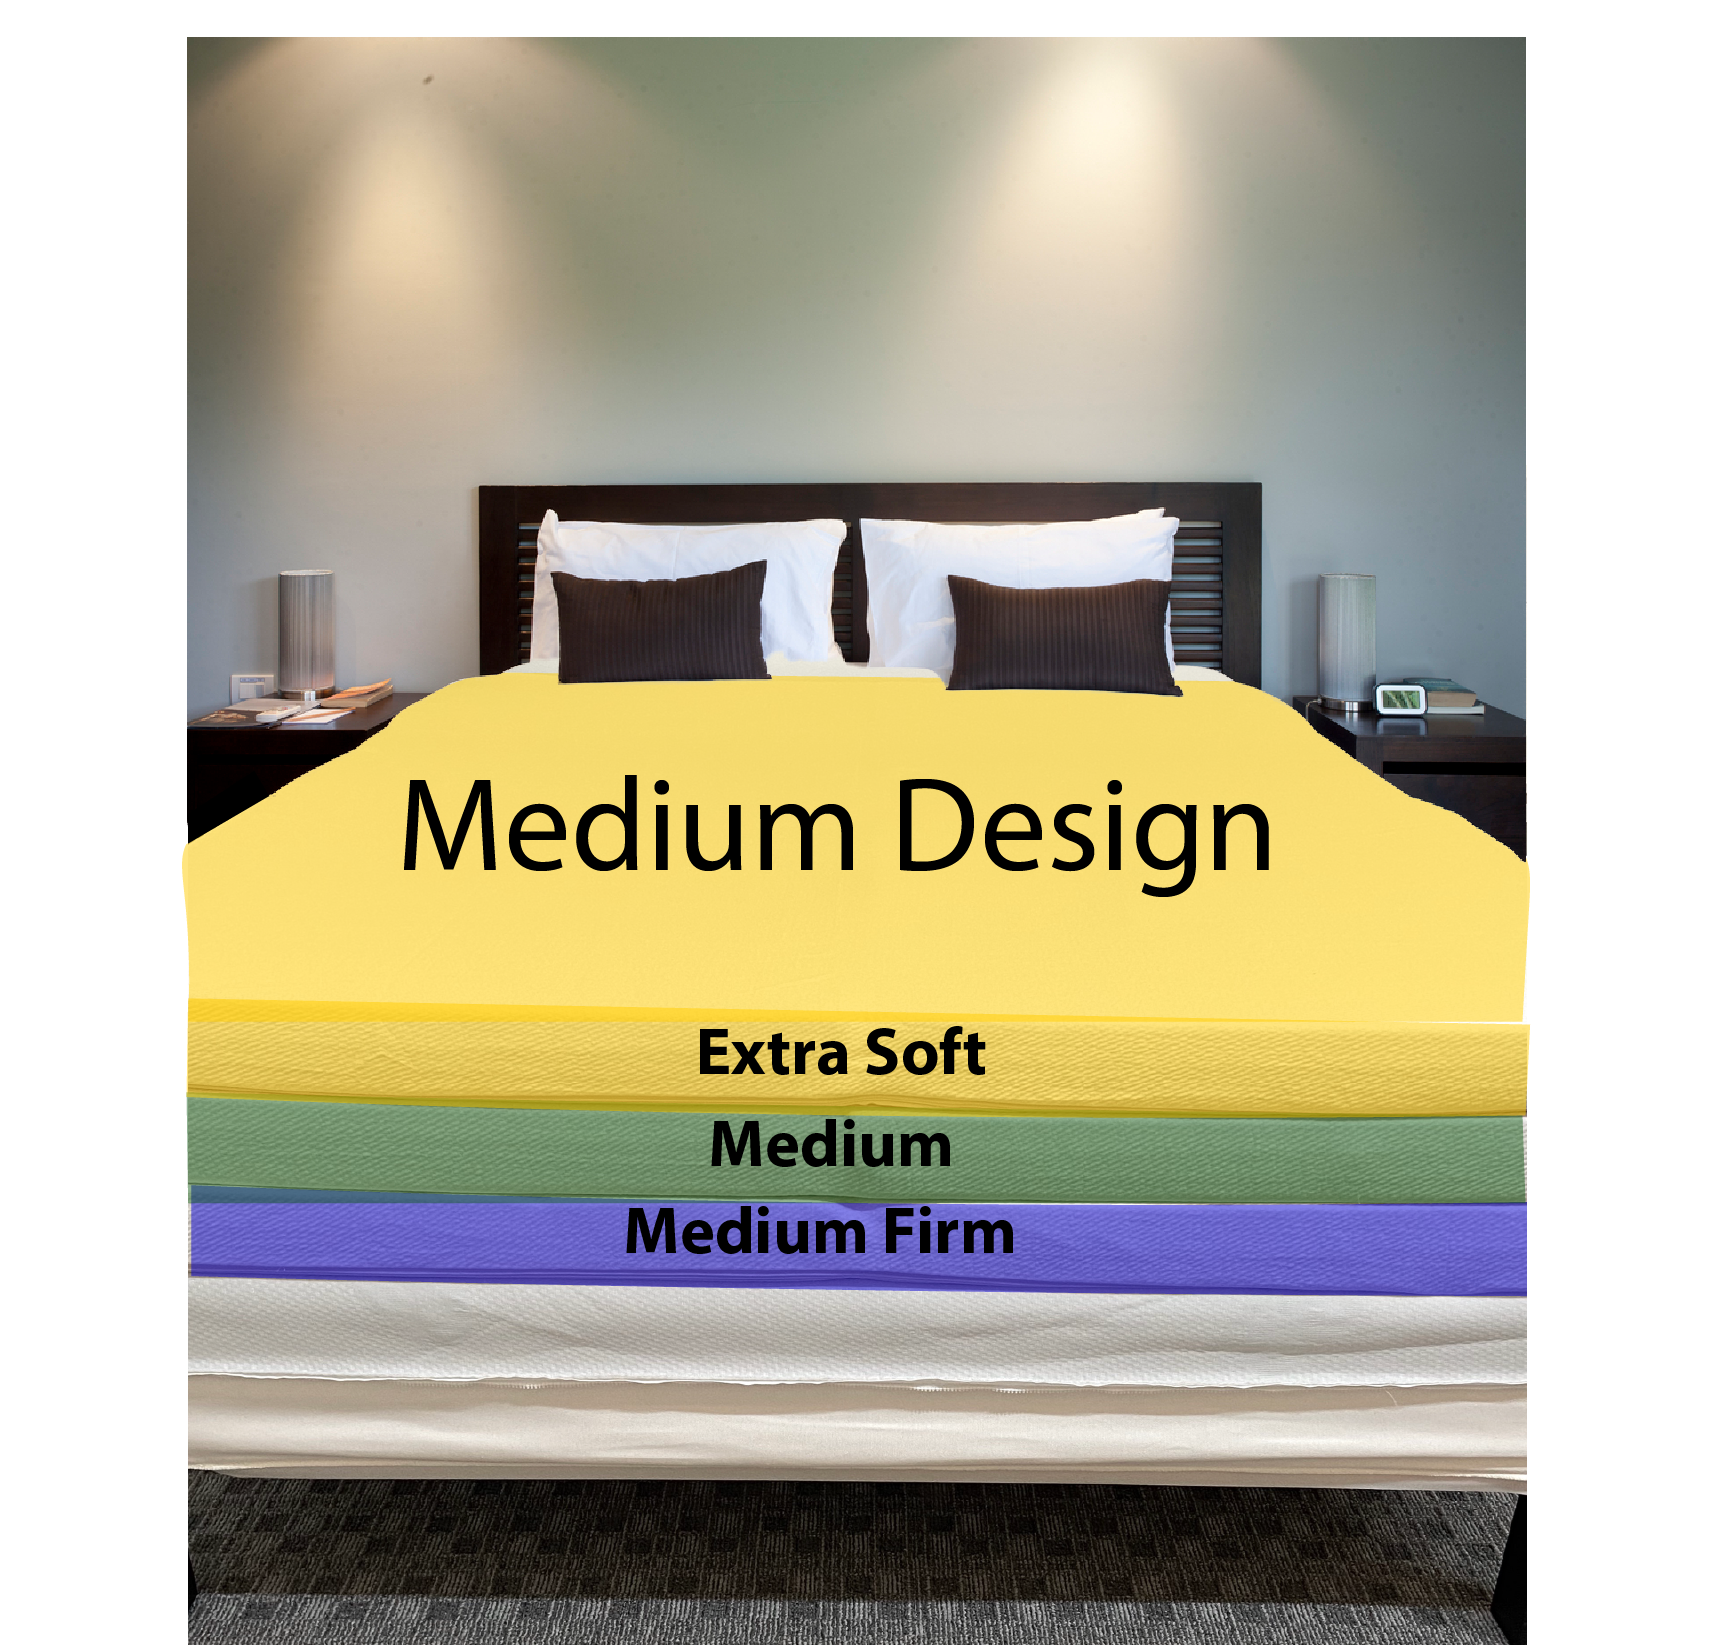 soft latex mattress